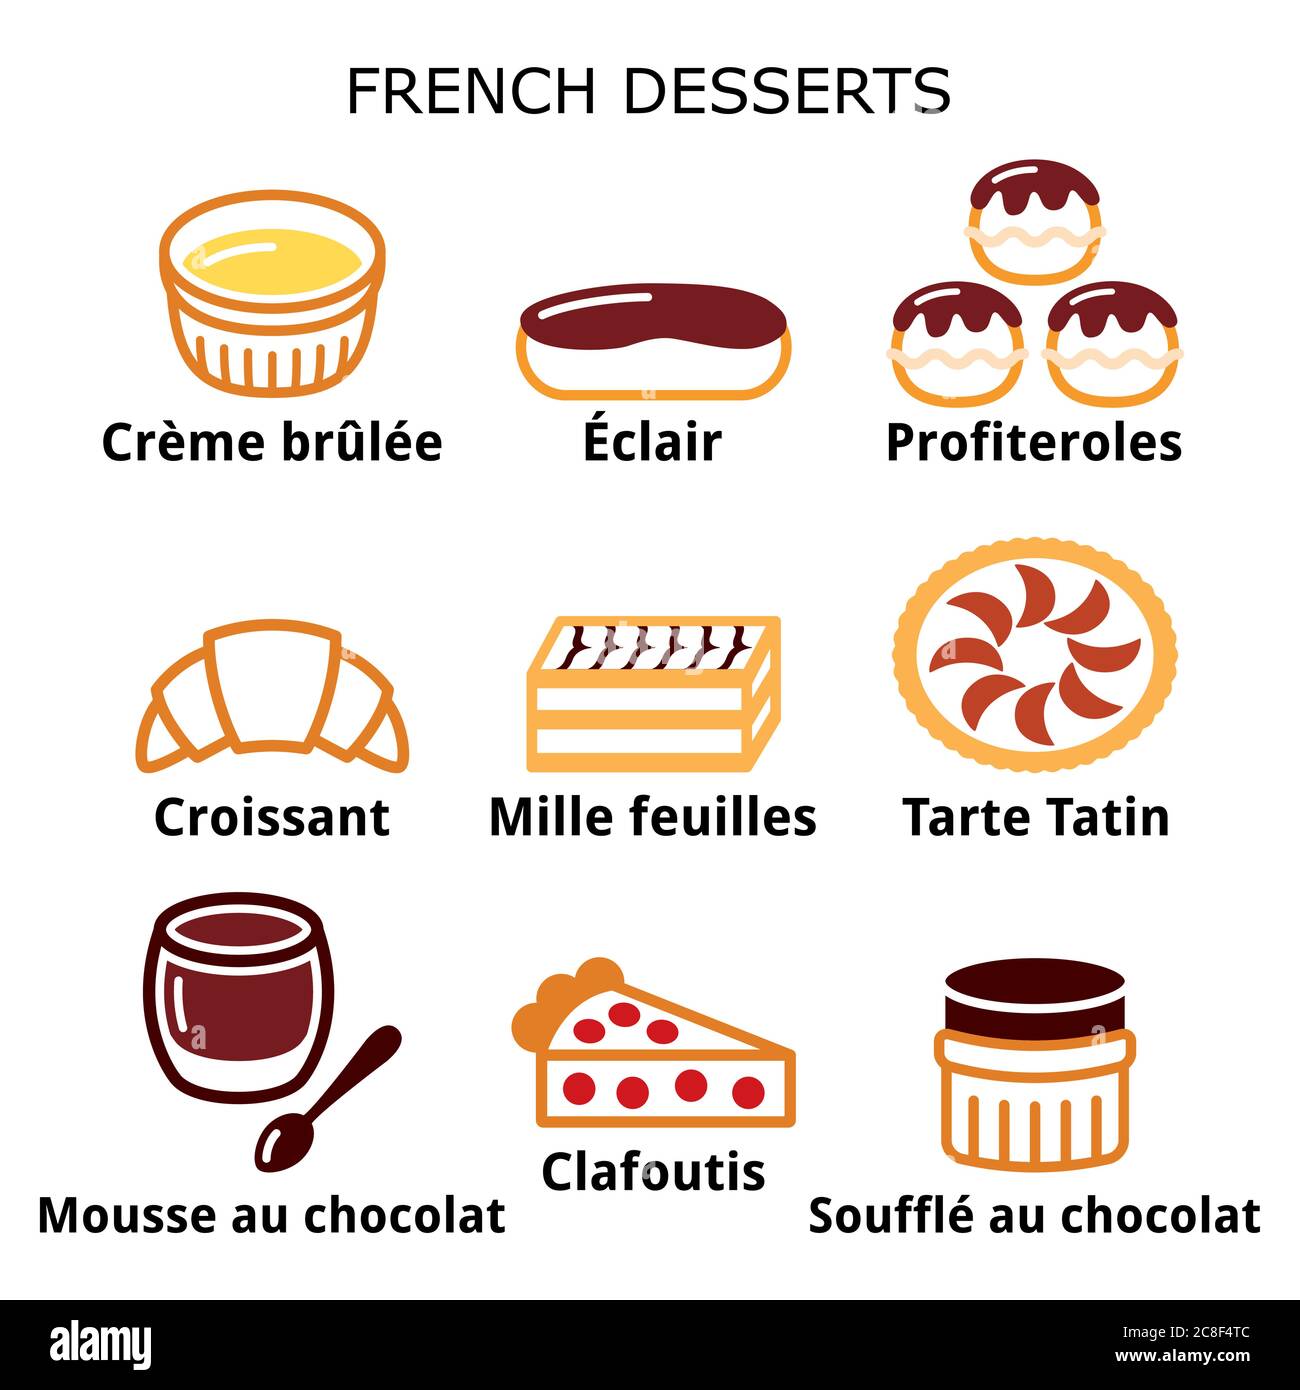 Dessert francese, pasticceria e torte icone - creme brulee, mousse al cioccolato, souffle Illustrazione Vettoriale